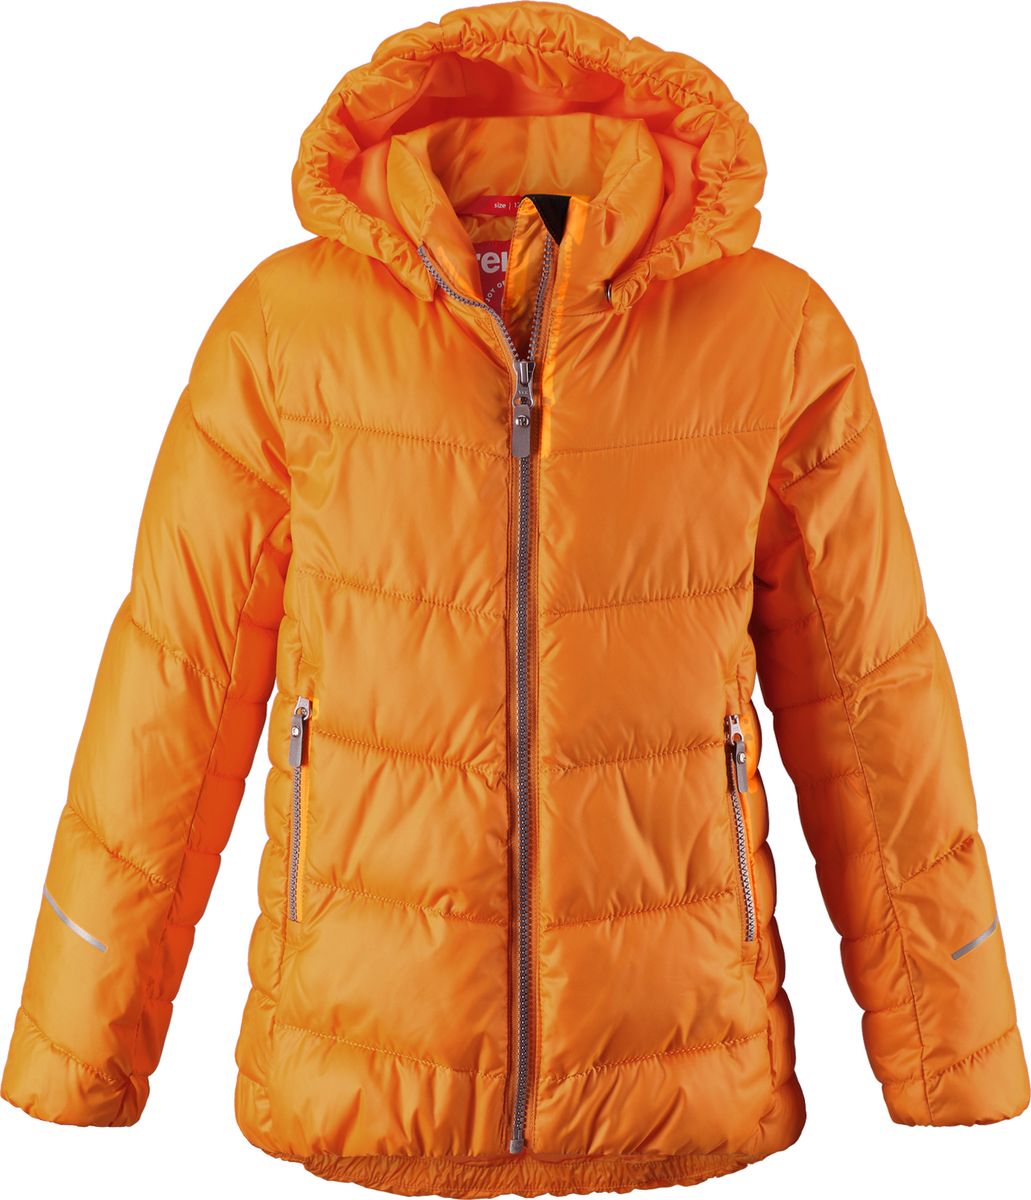 Куртка для девочки Reima Malla, цвет: оранжевый. 5313442440. Размер 158